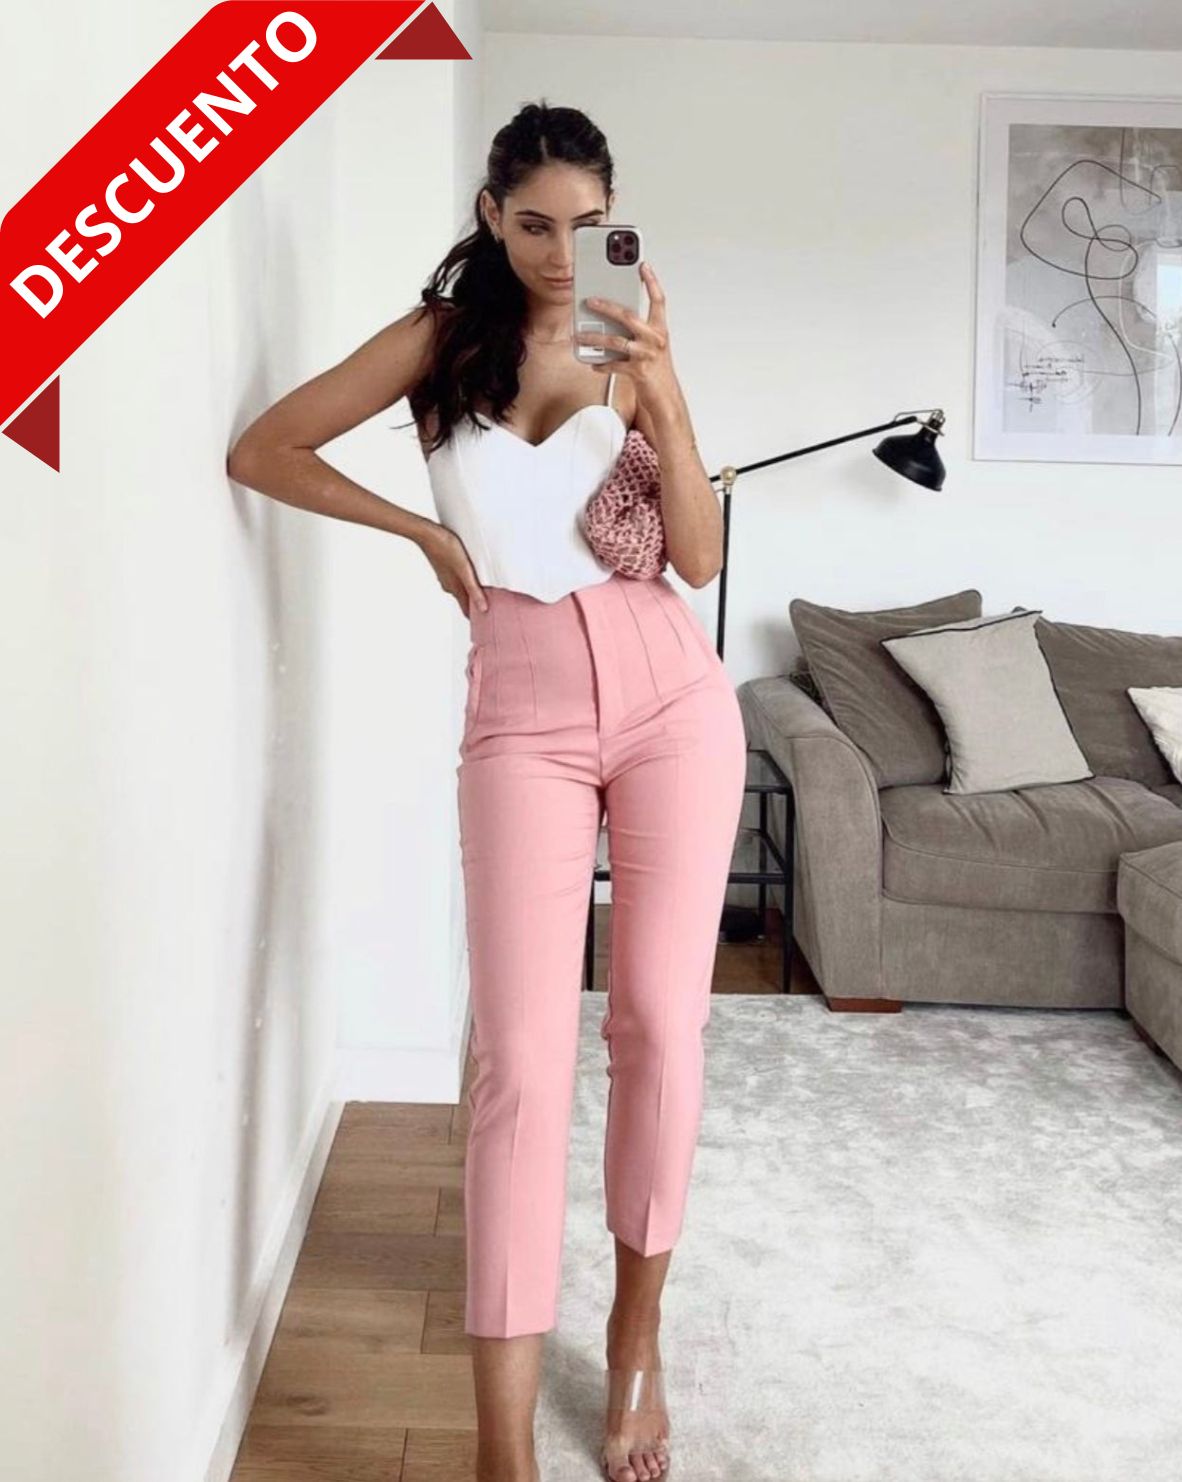 Pantalón rosa de talle alto para mujer, ideal para un look moderno y elegante.